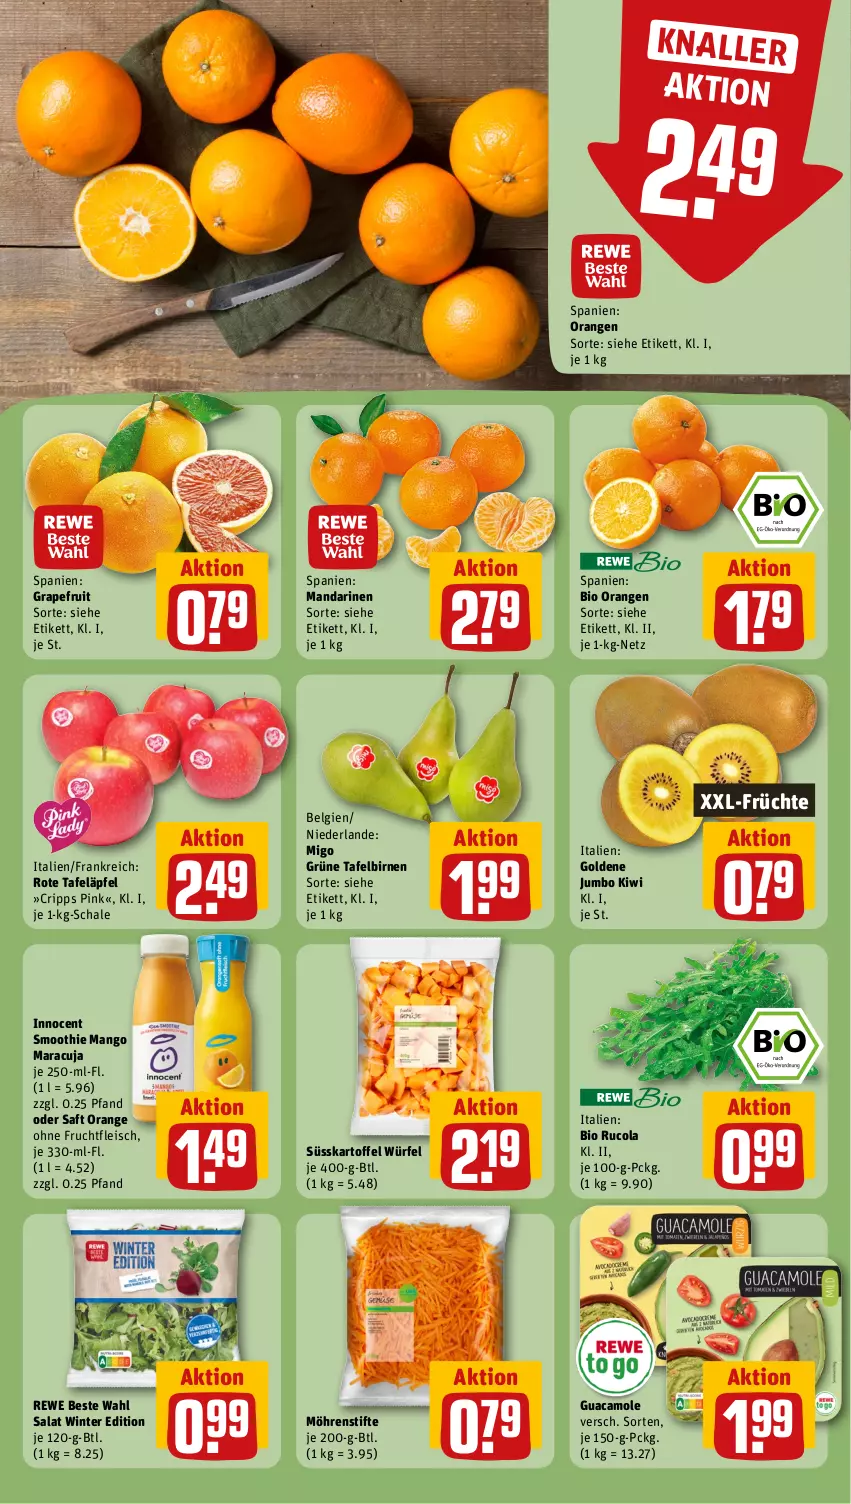 Aktueller Prospekt Rewe - Prospekte - von 29.01 bis 03.02.2024 - strona 4 - produkty: bio, Birnen, cola, eis, fleisch, frucht, früchte, fruchtfleisch, grapefruit, guacamole, Innocent, jumbo, kartoffel, kiwi, LG, mandarine, mandarinen, mango, maracuja, möhren, orange, orangen, rewe beste wahl, rote tafeläpfel, rucola, saft, salat, Schal, Schale, smoothie, stifte, tafeläpfel, tafelbirnen, Ti, würfel